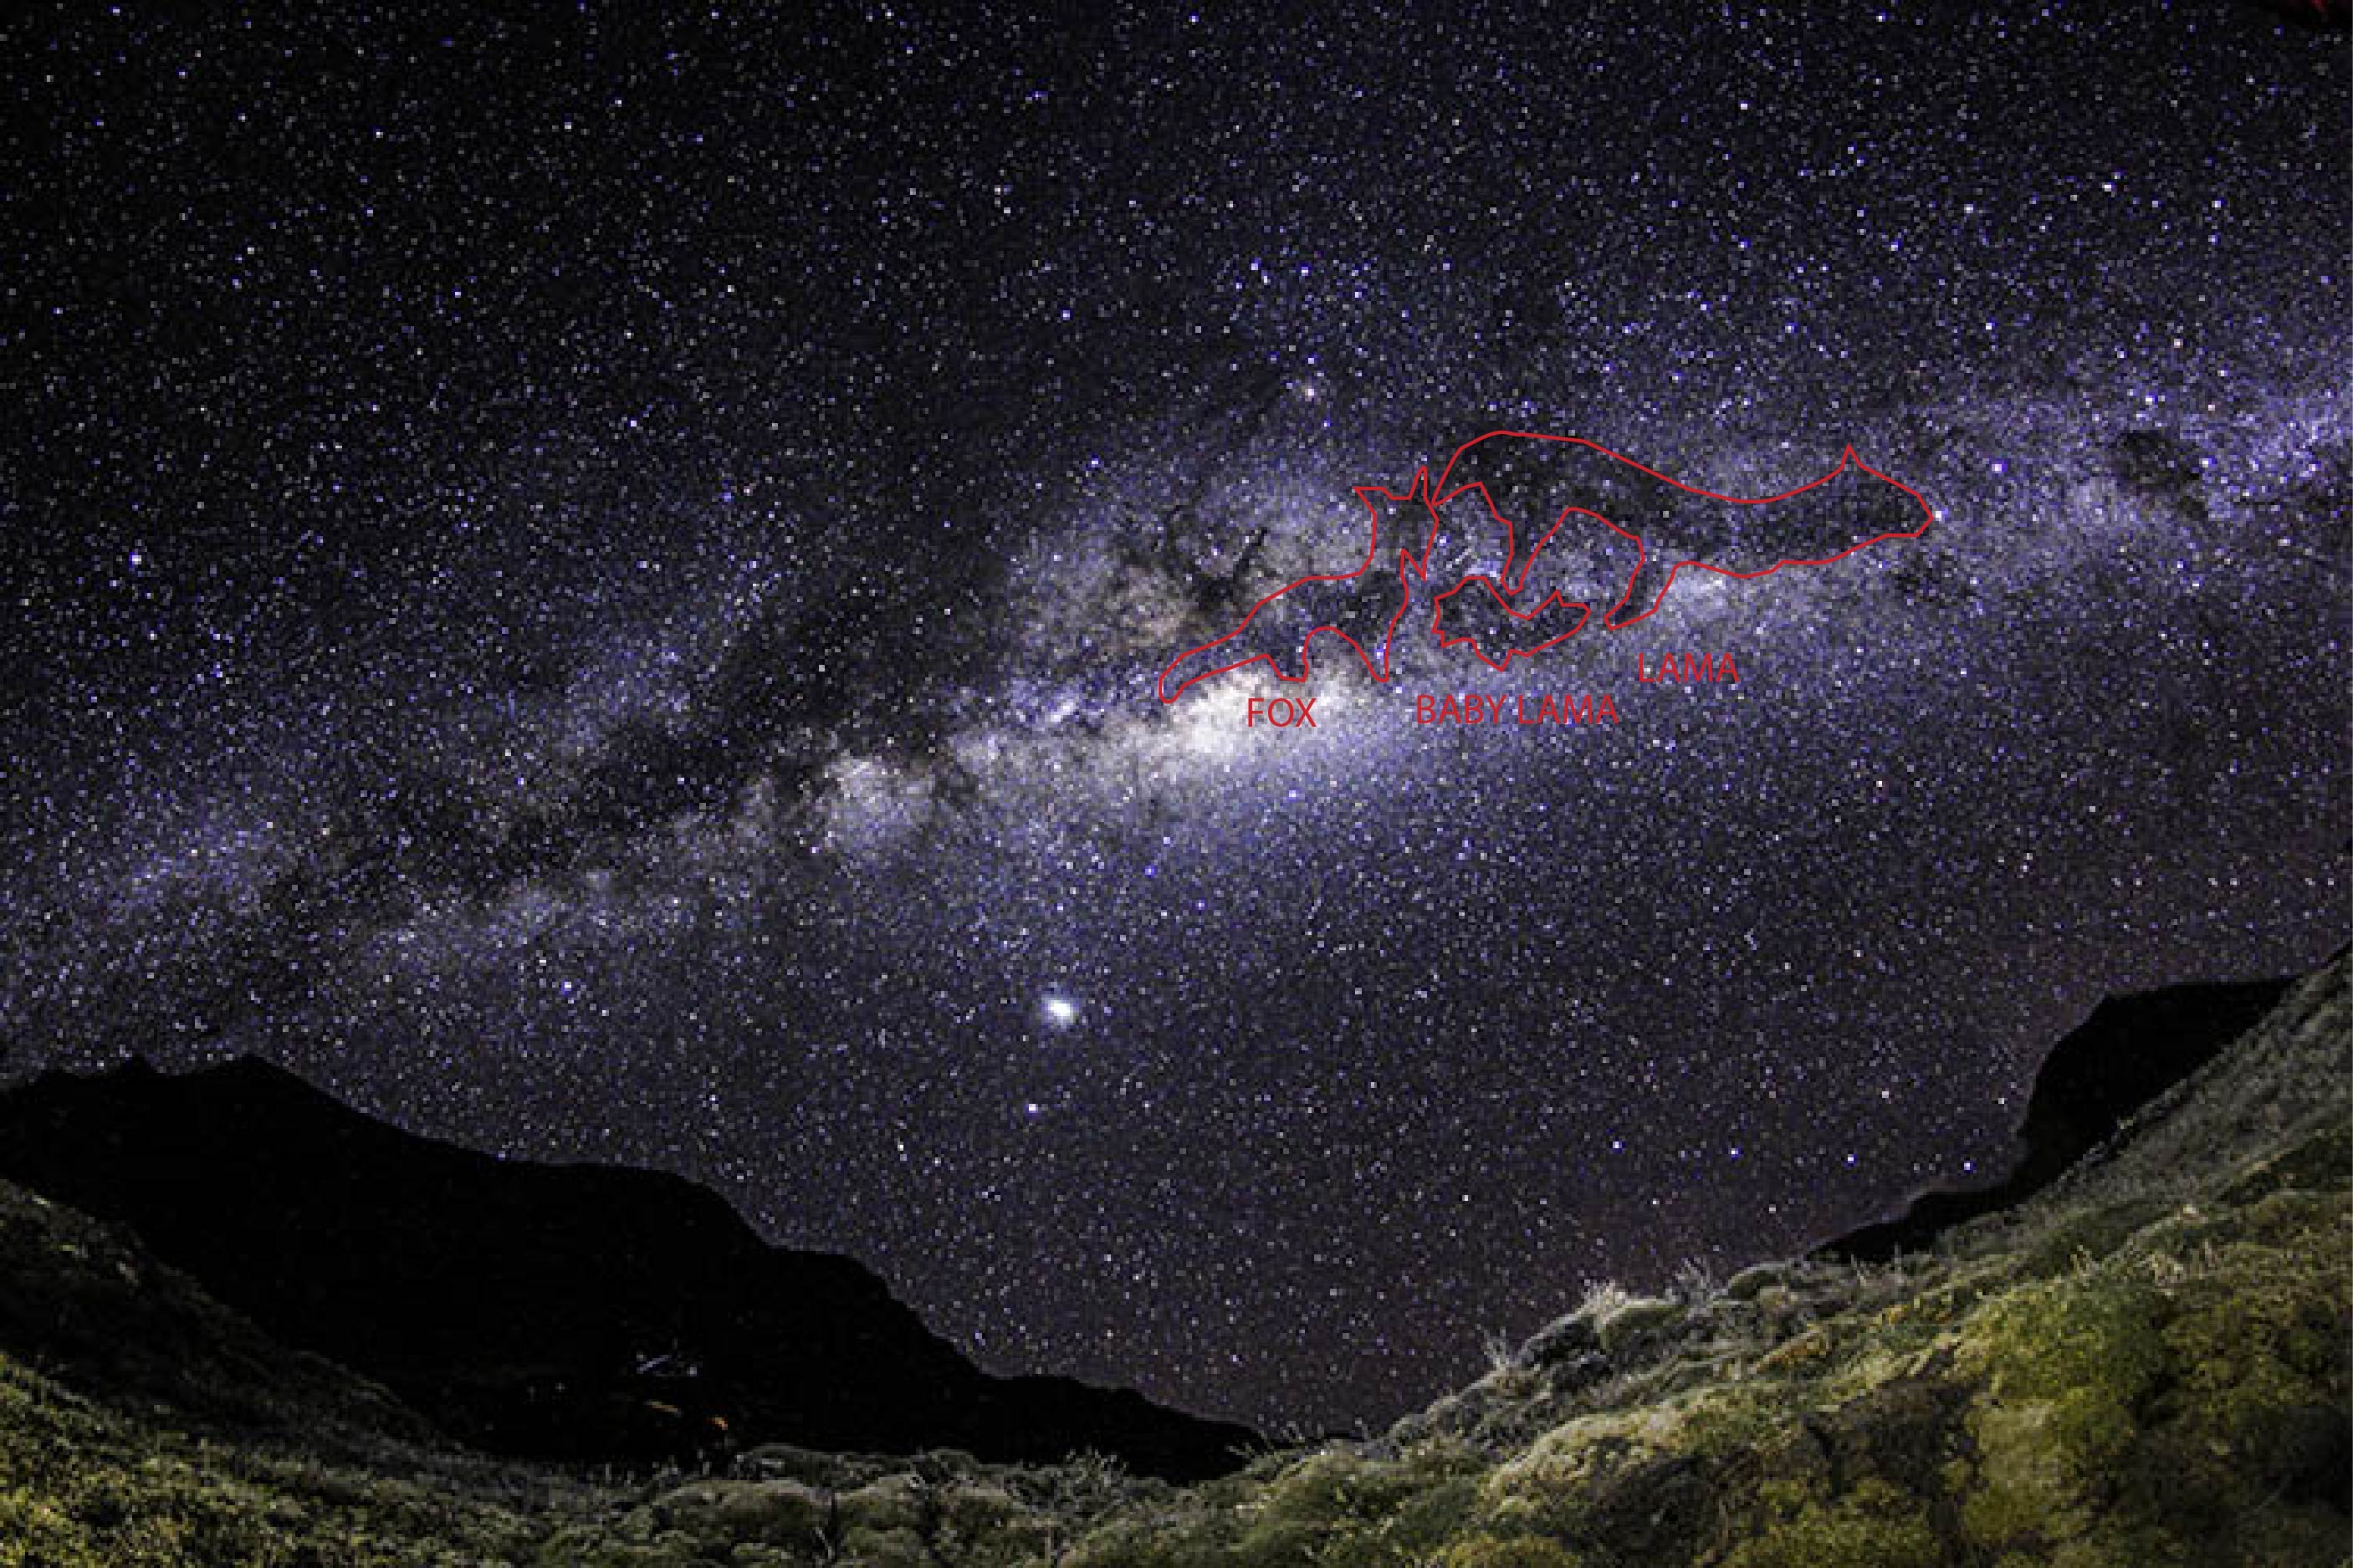 2. Milky Way showing Fox and Llamas